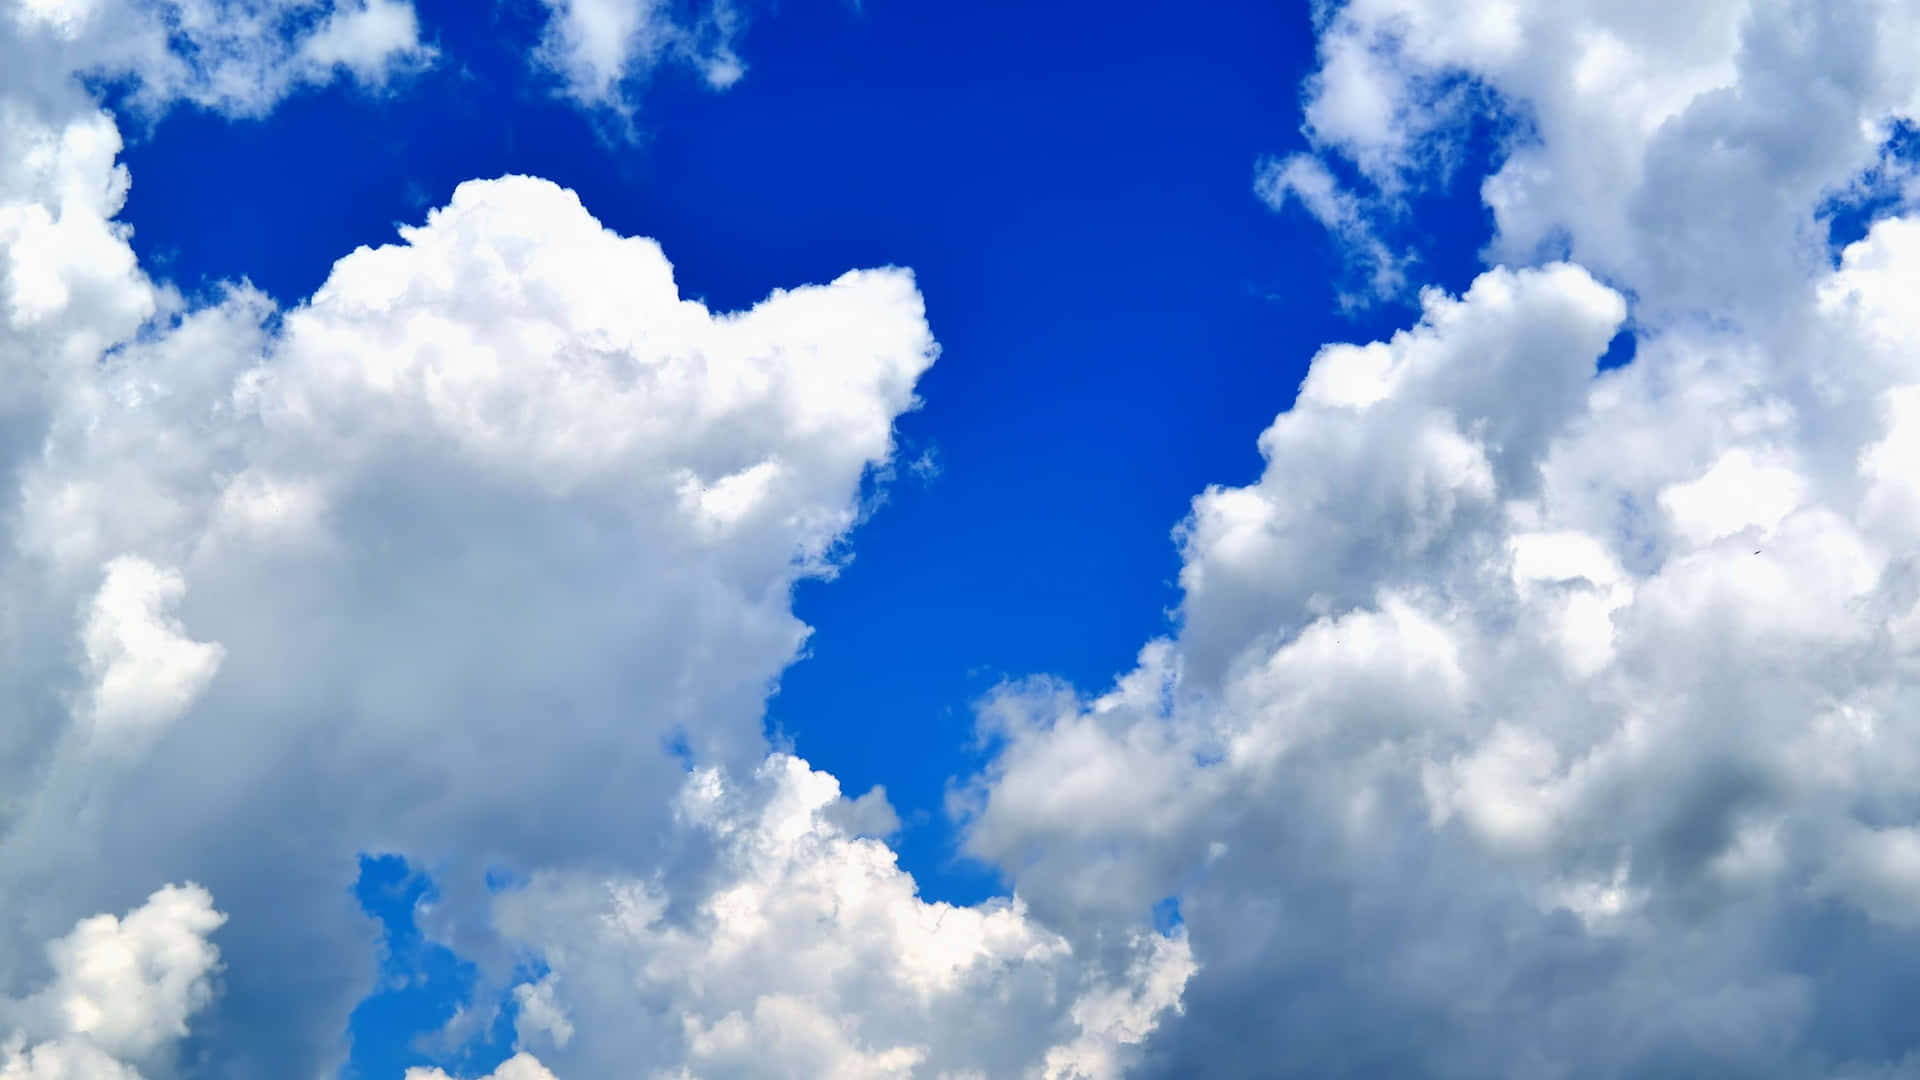 Elevevuelo Por Encima De Las Nubes Con Un Hermoso Fondo De Pantalla En 4k. Fondo de pantalla